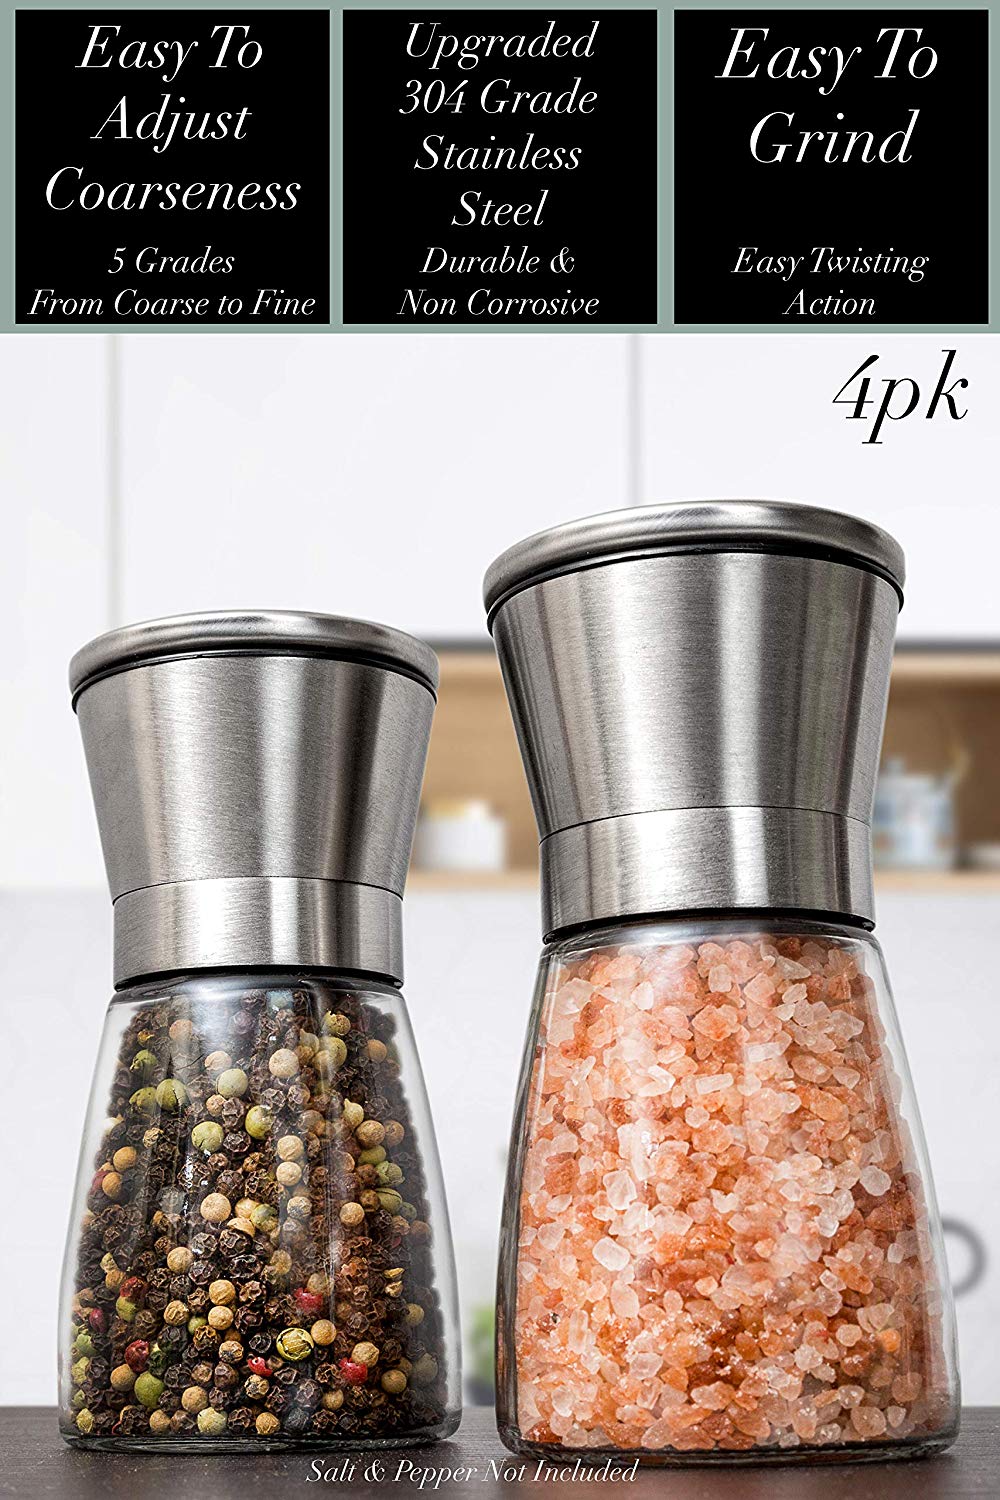 Home EC Salt and Pepper Grinder Set 4pk - Short